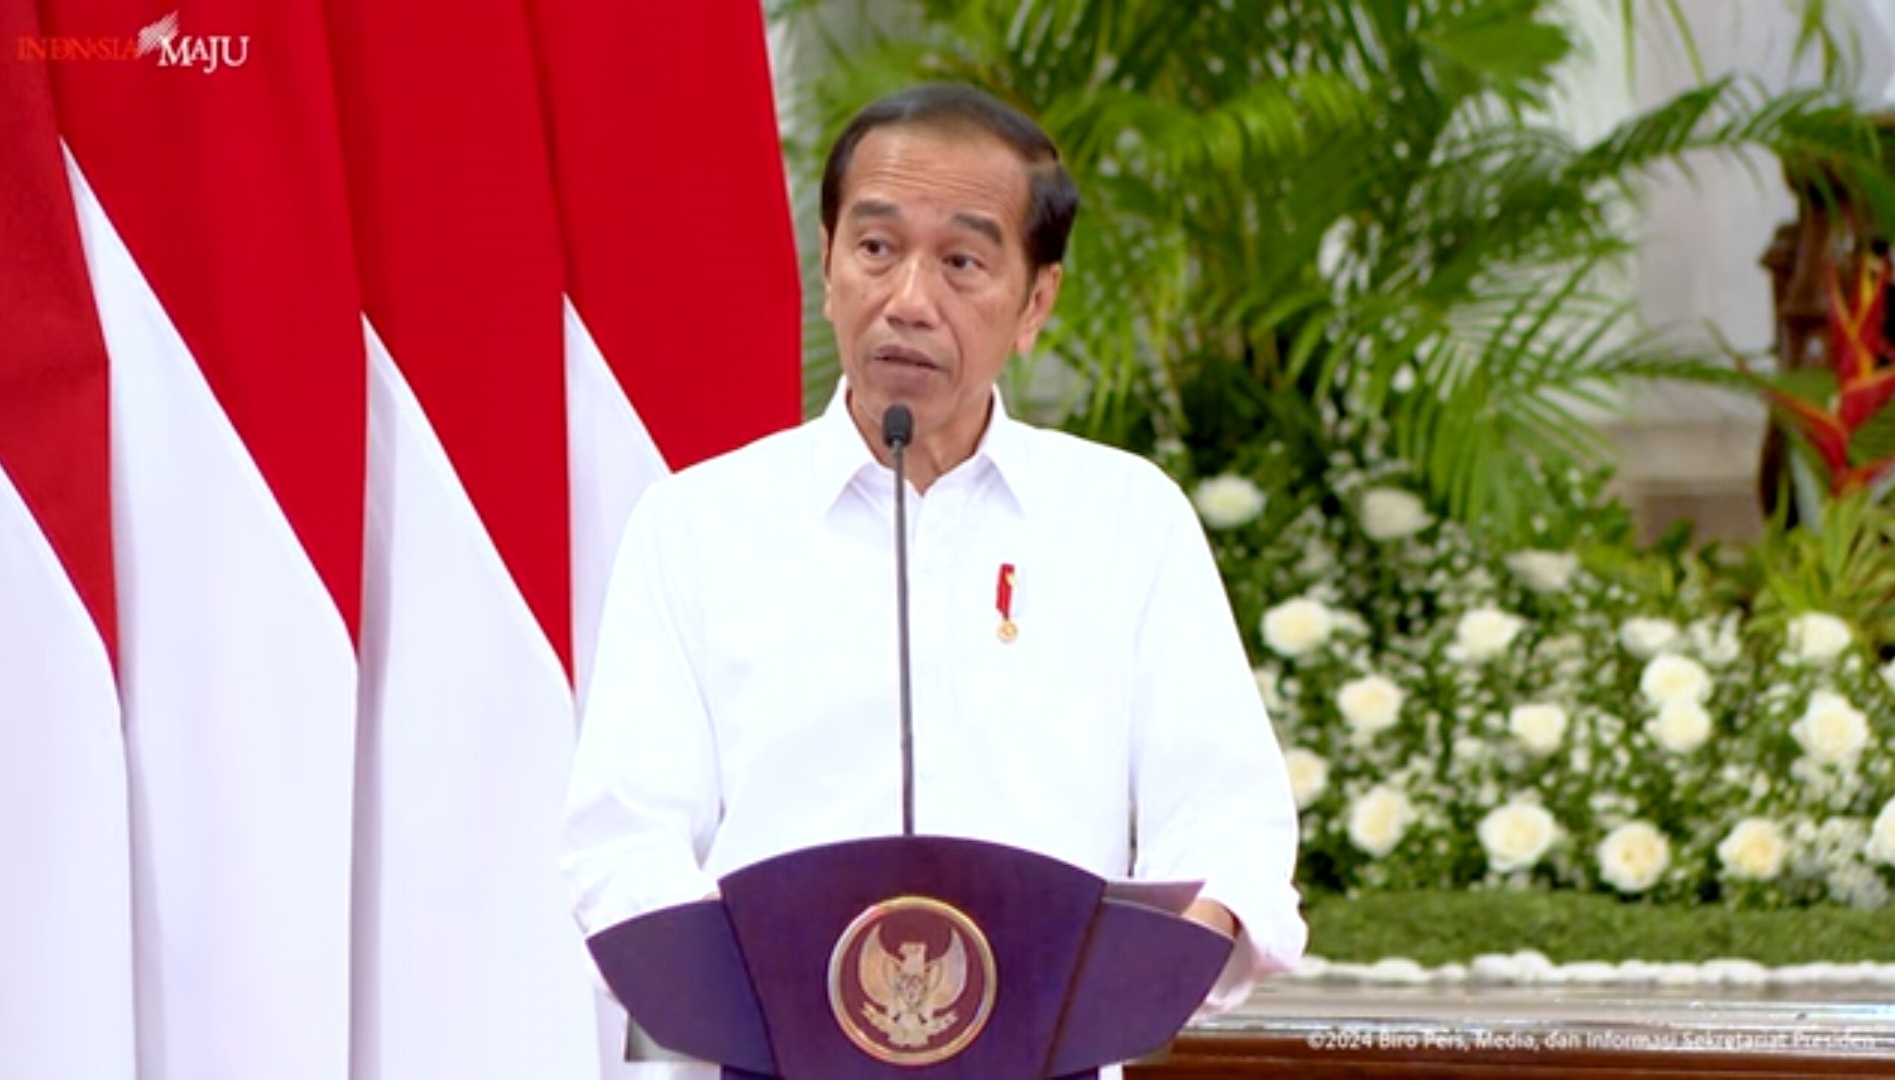 Jelang Ramadan, Jokowi Minta Menterinya Jaga Stabilitas Harga Pangan